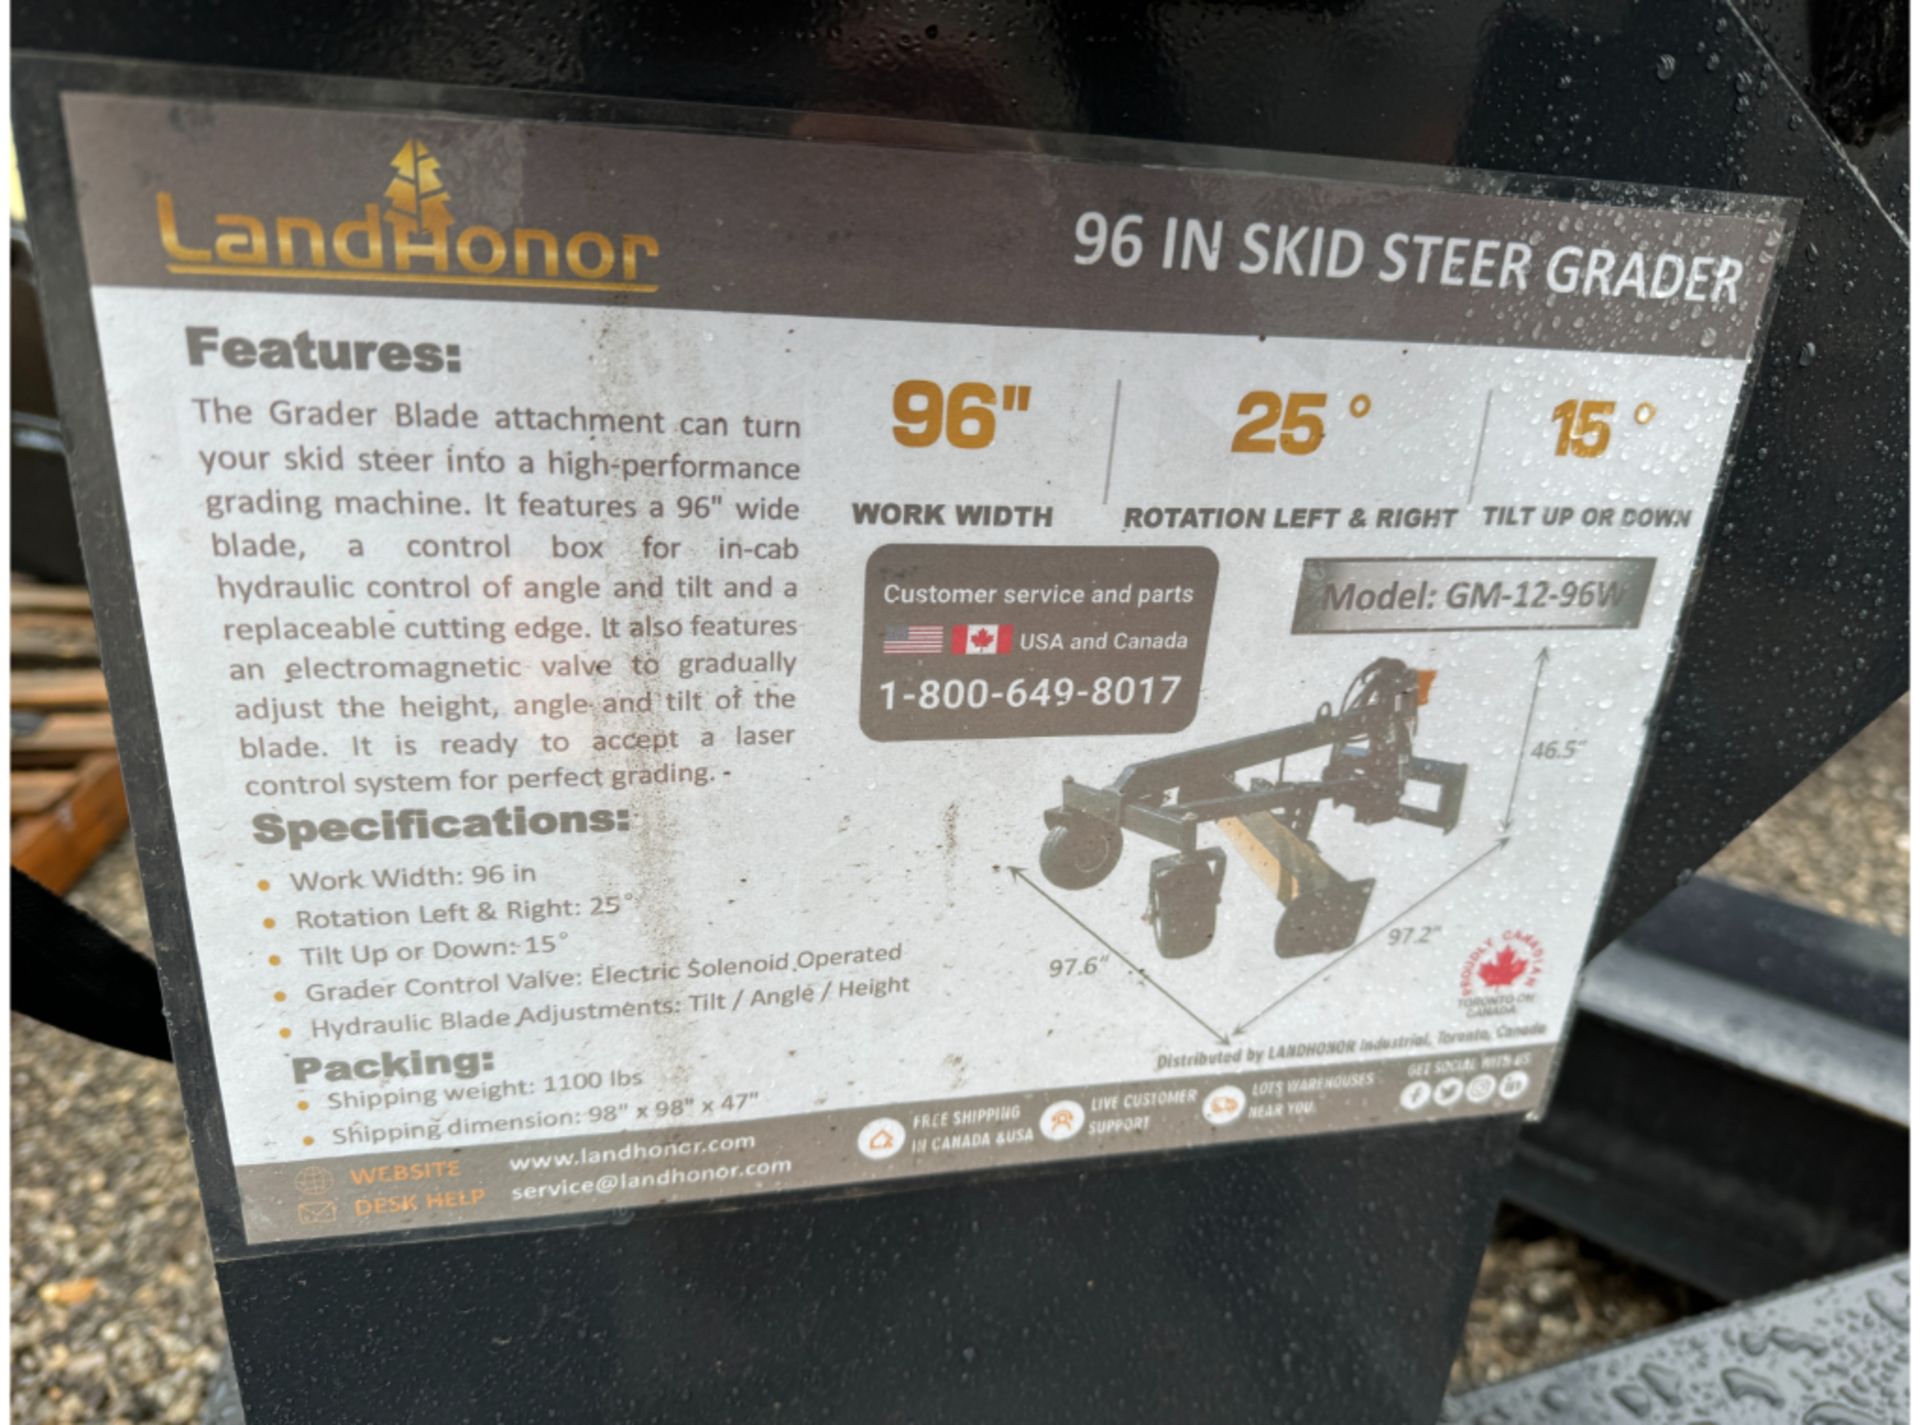 Landhonor GM-12-96W 96" Skid Steer Grader - Image 2 of 5